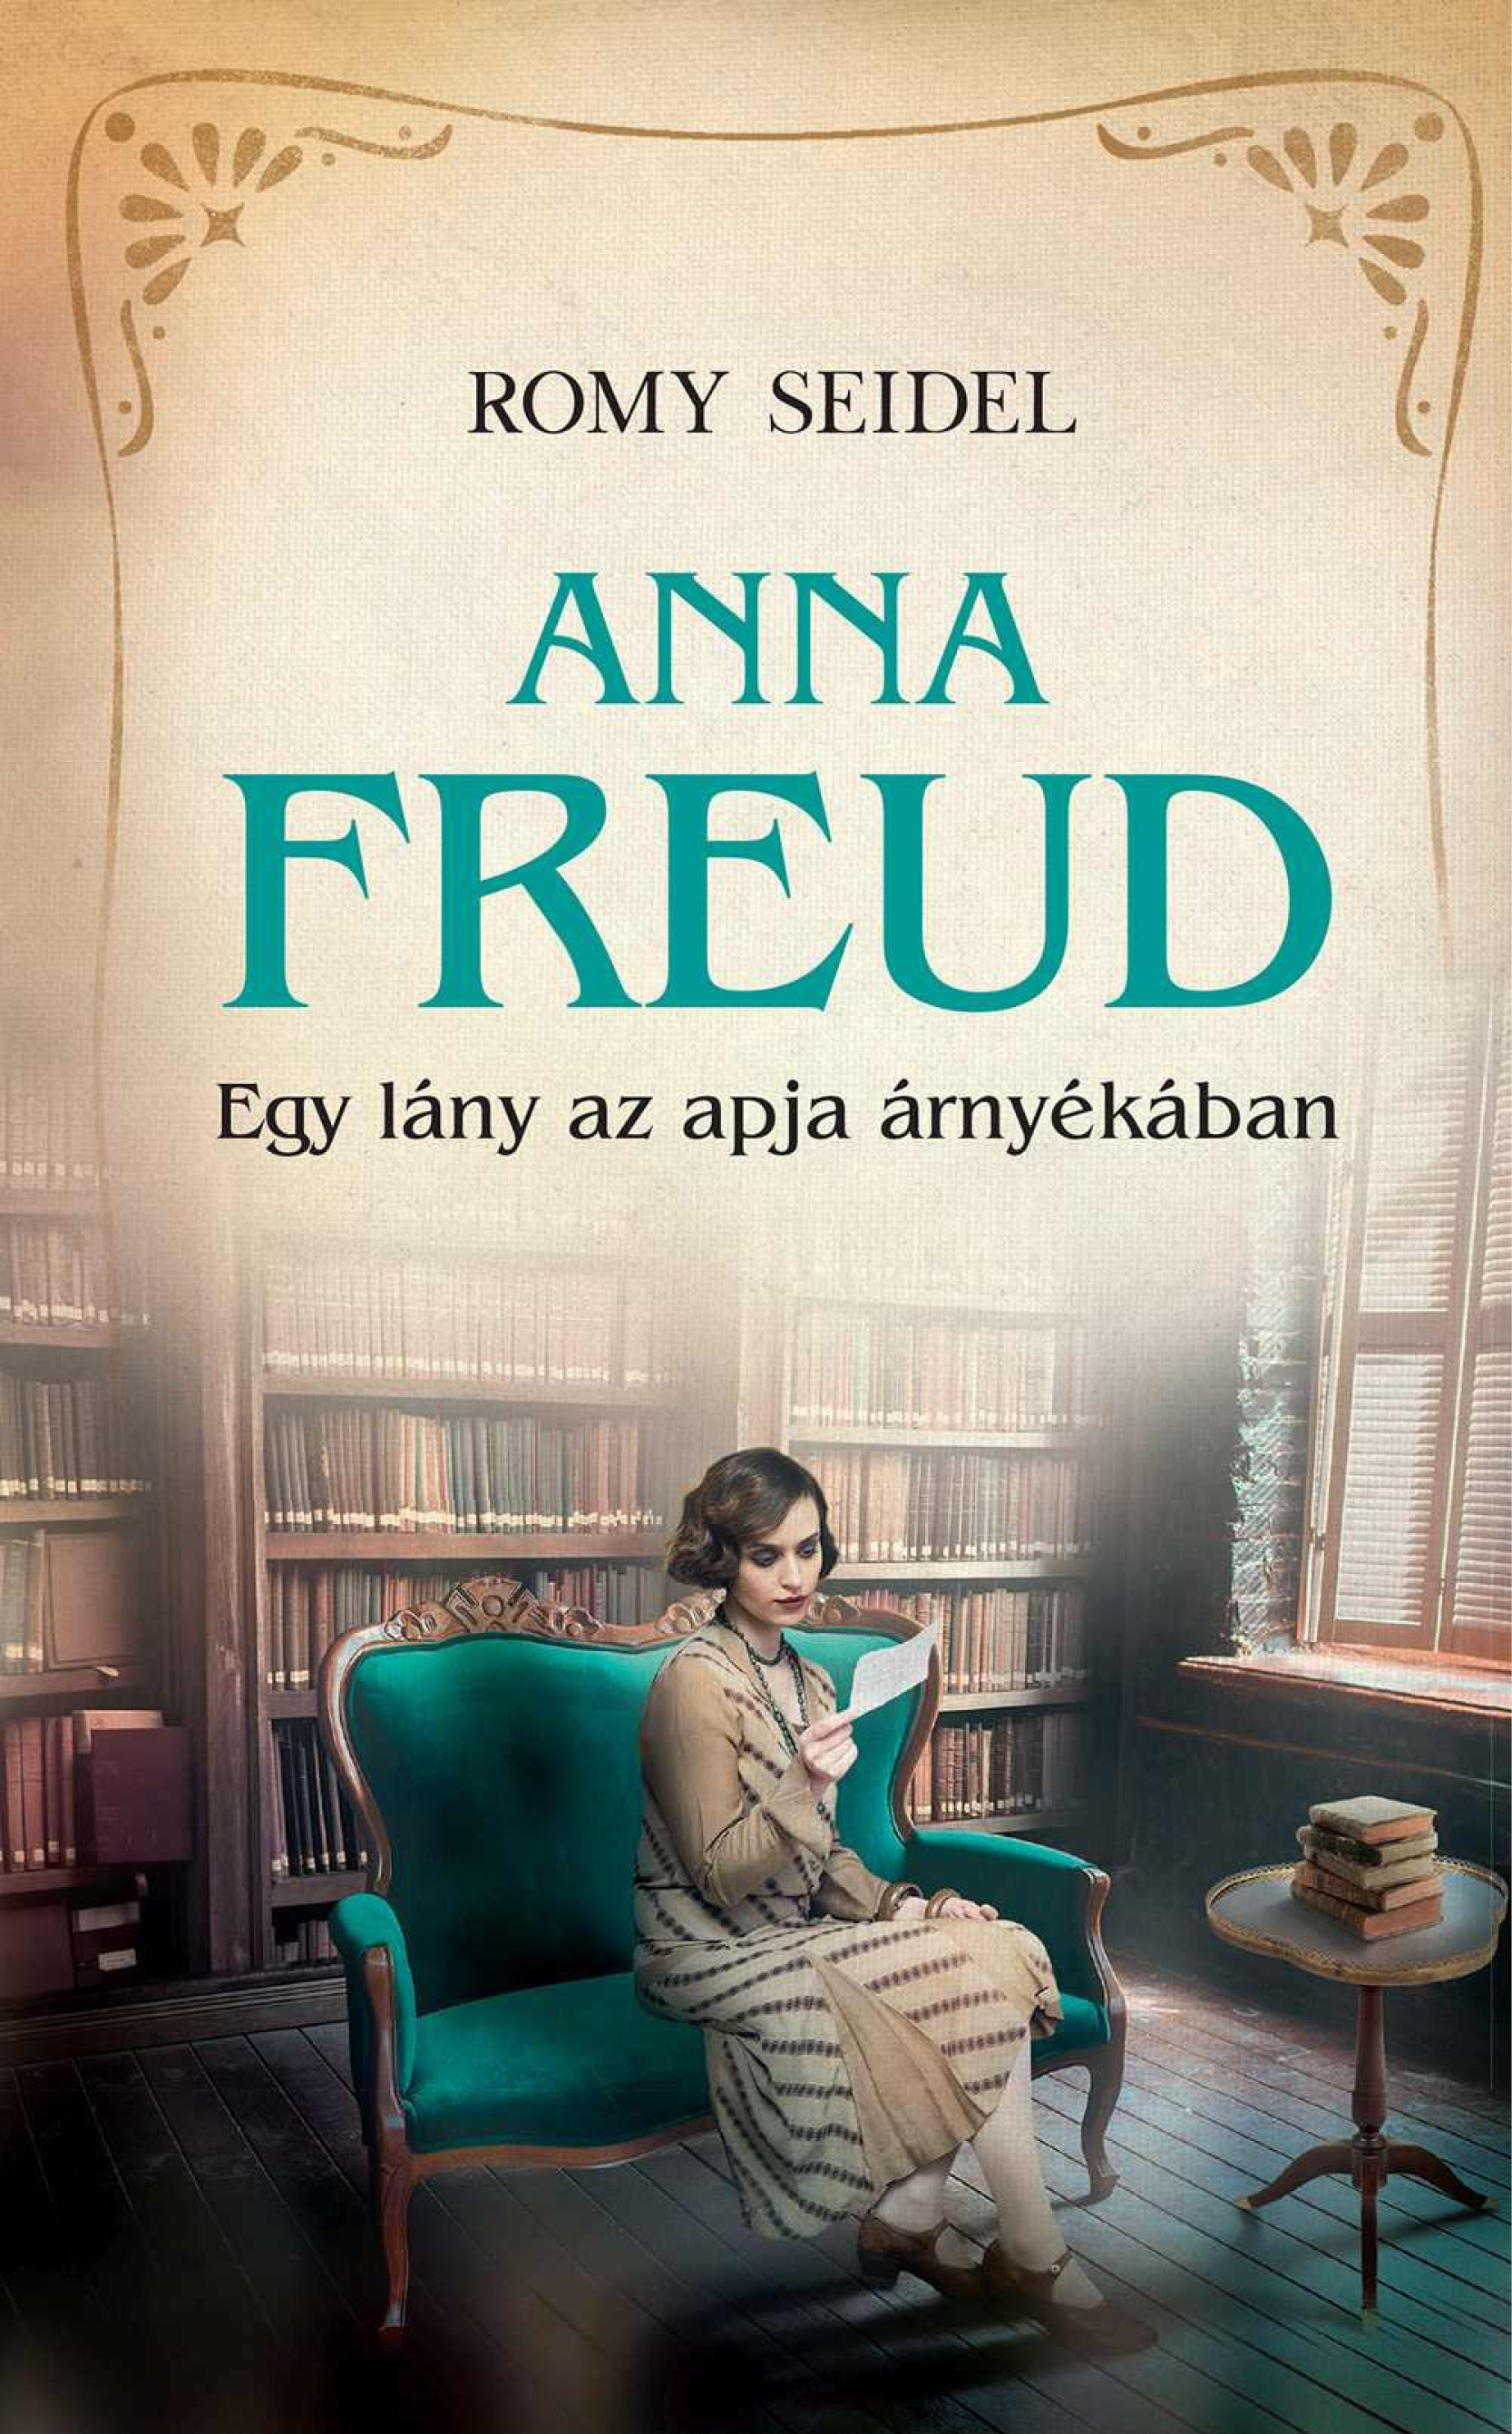 Romy Seidel: Anna Freud - Egy lány az apja árnyékában